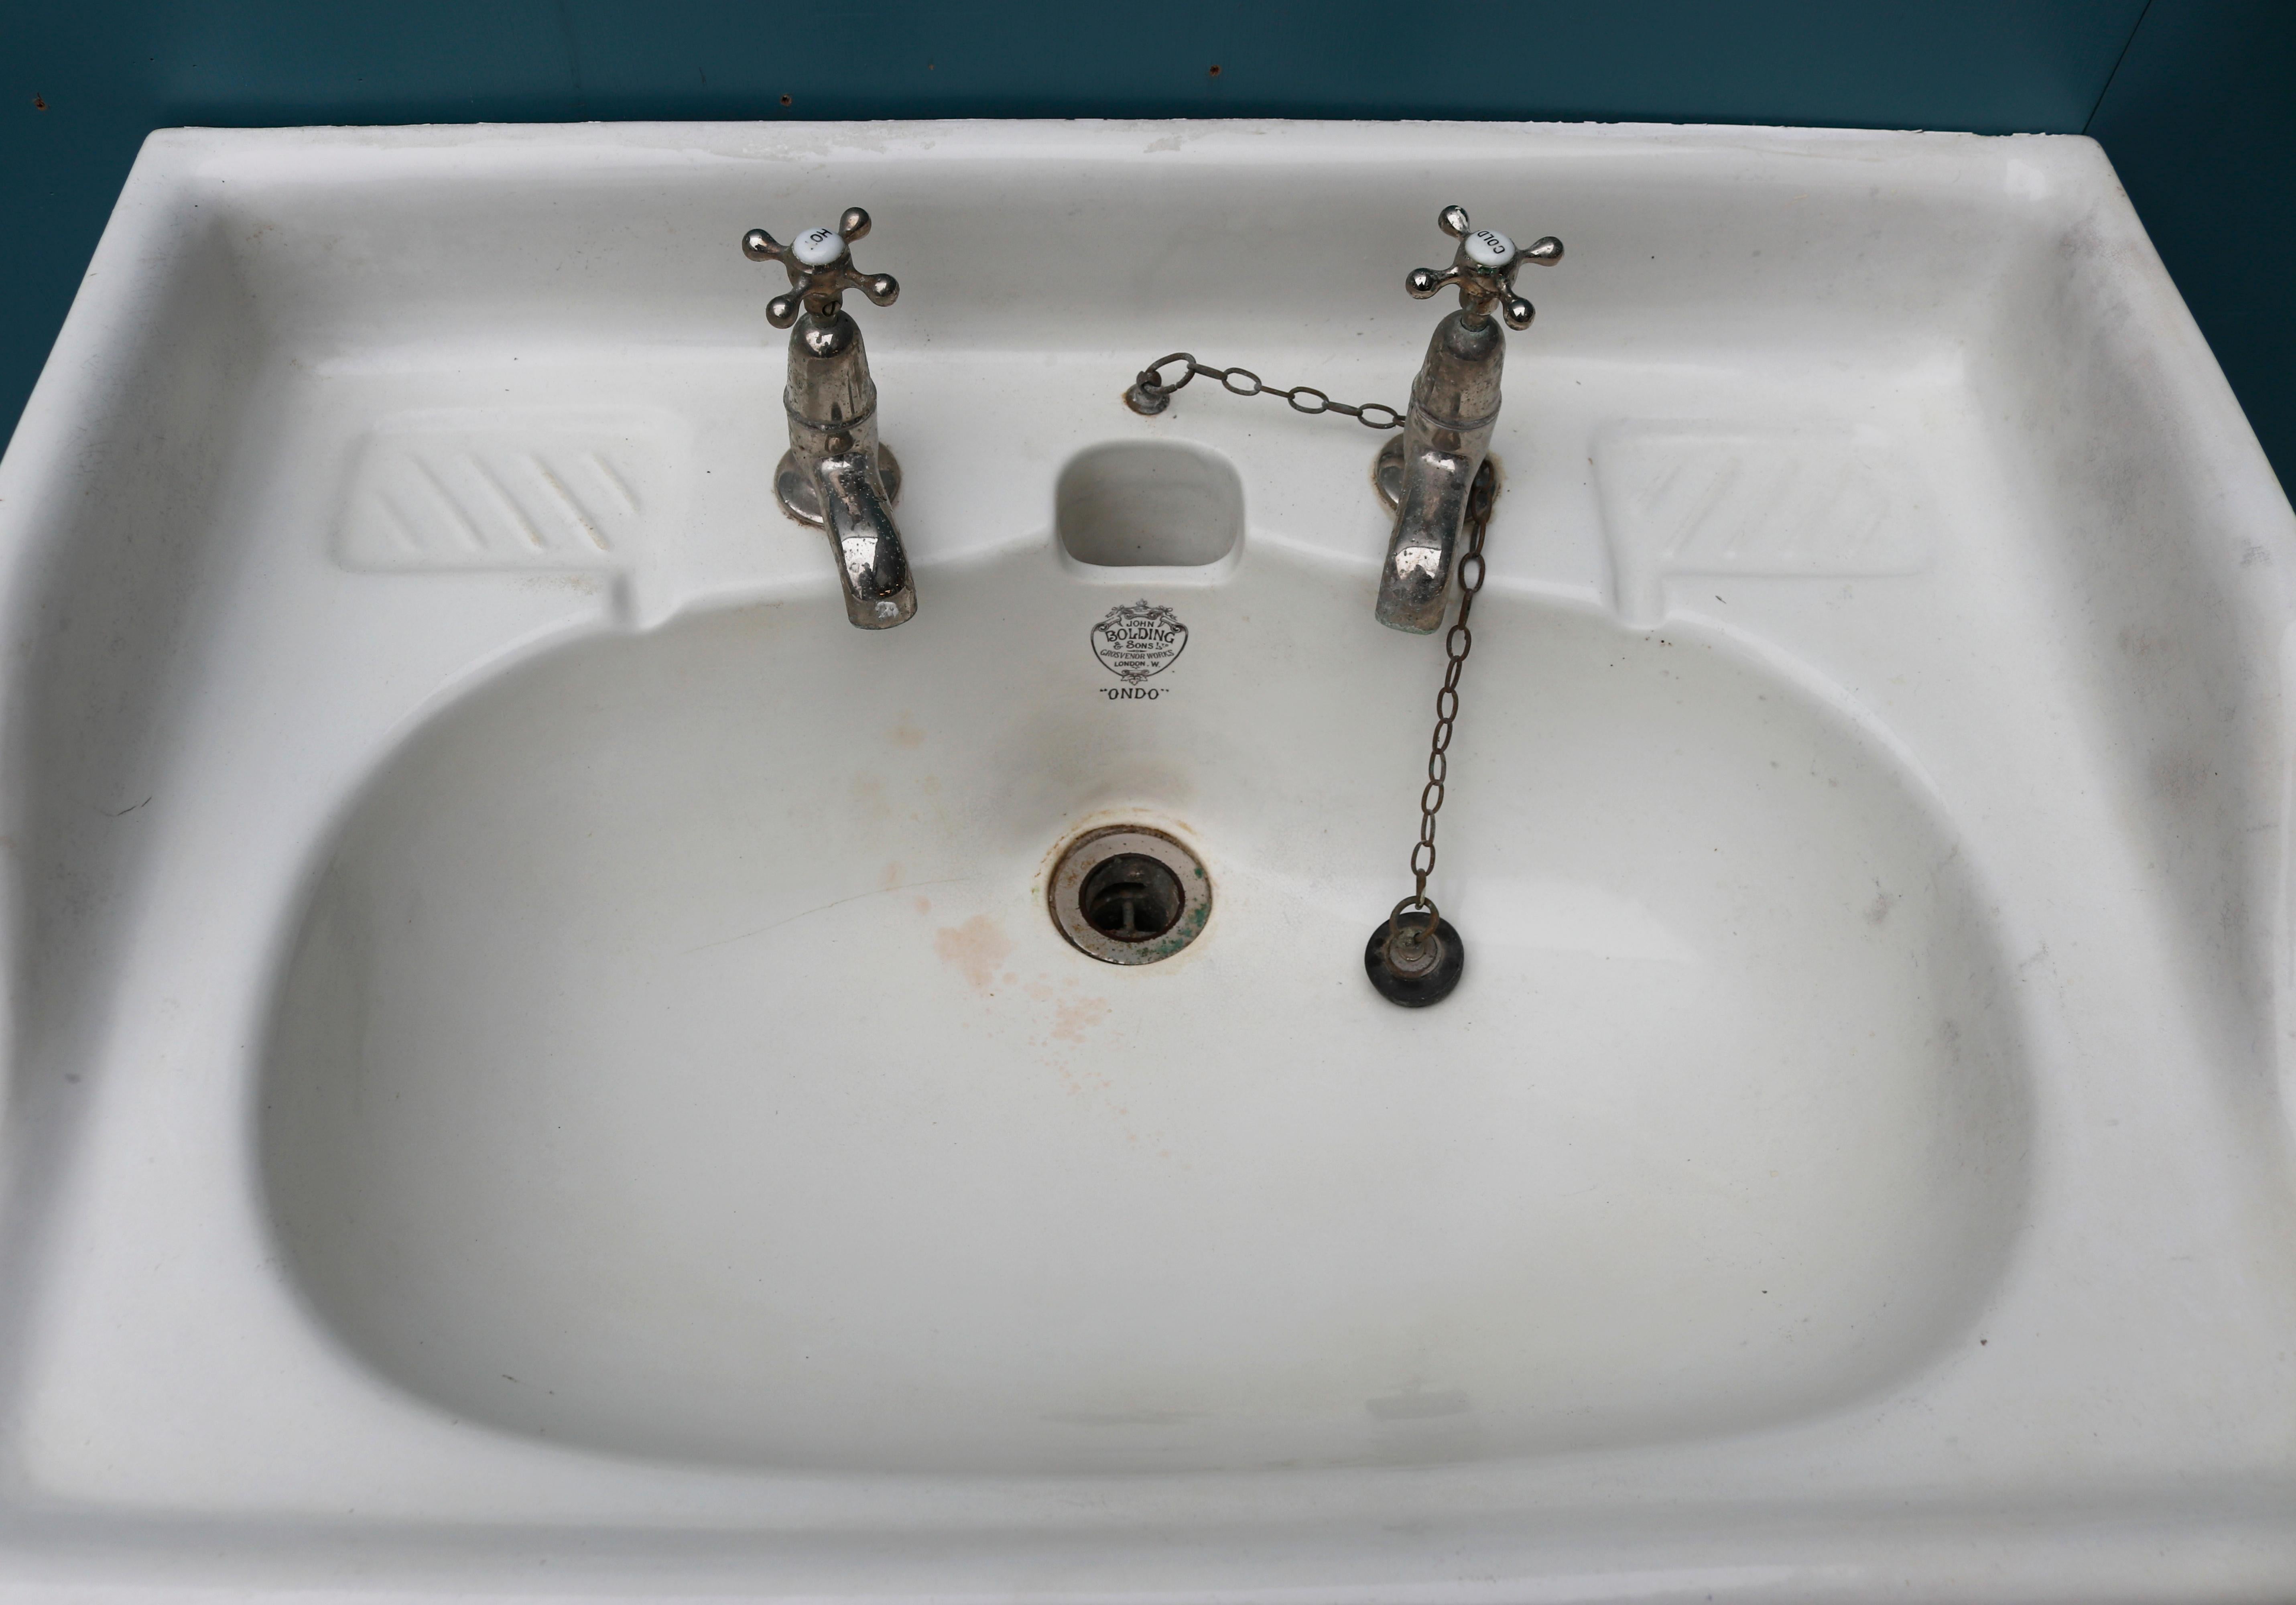 edwardian style wash basins